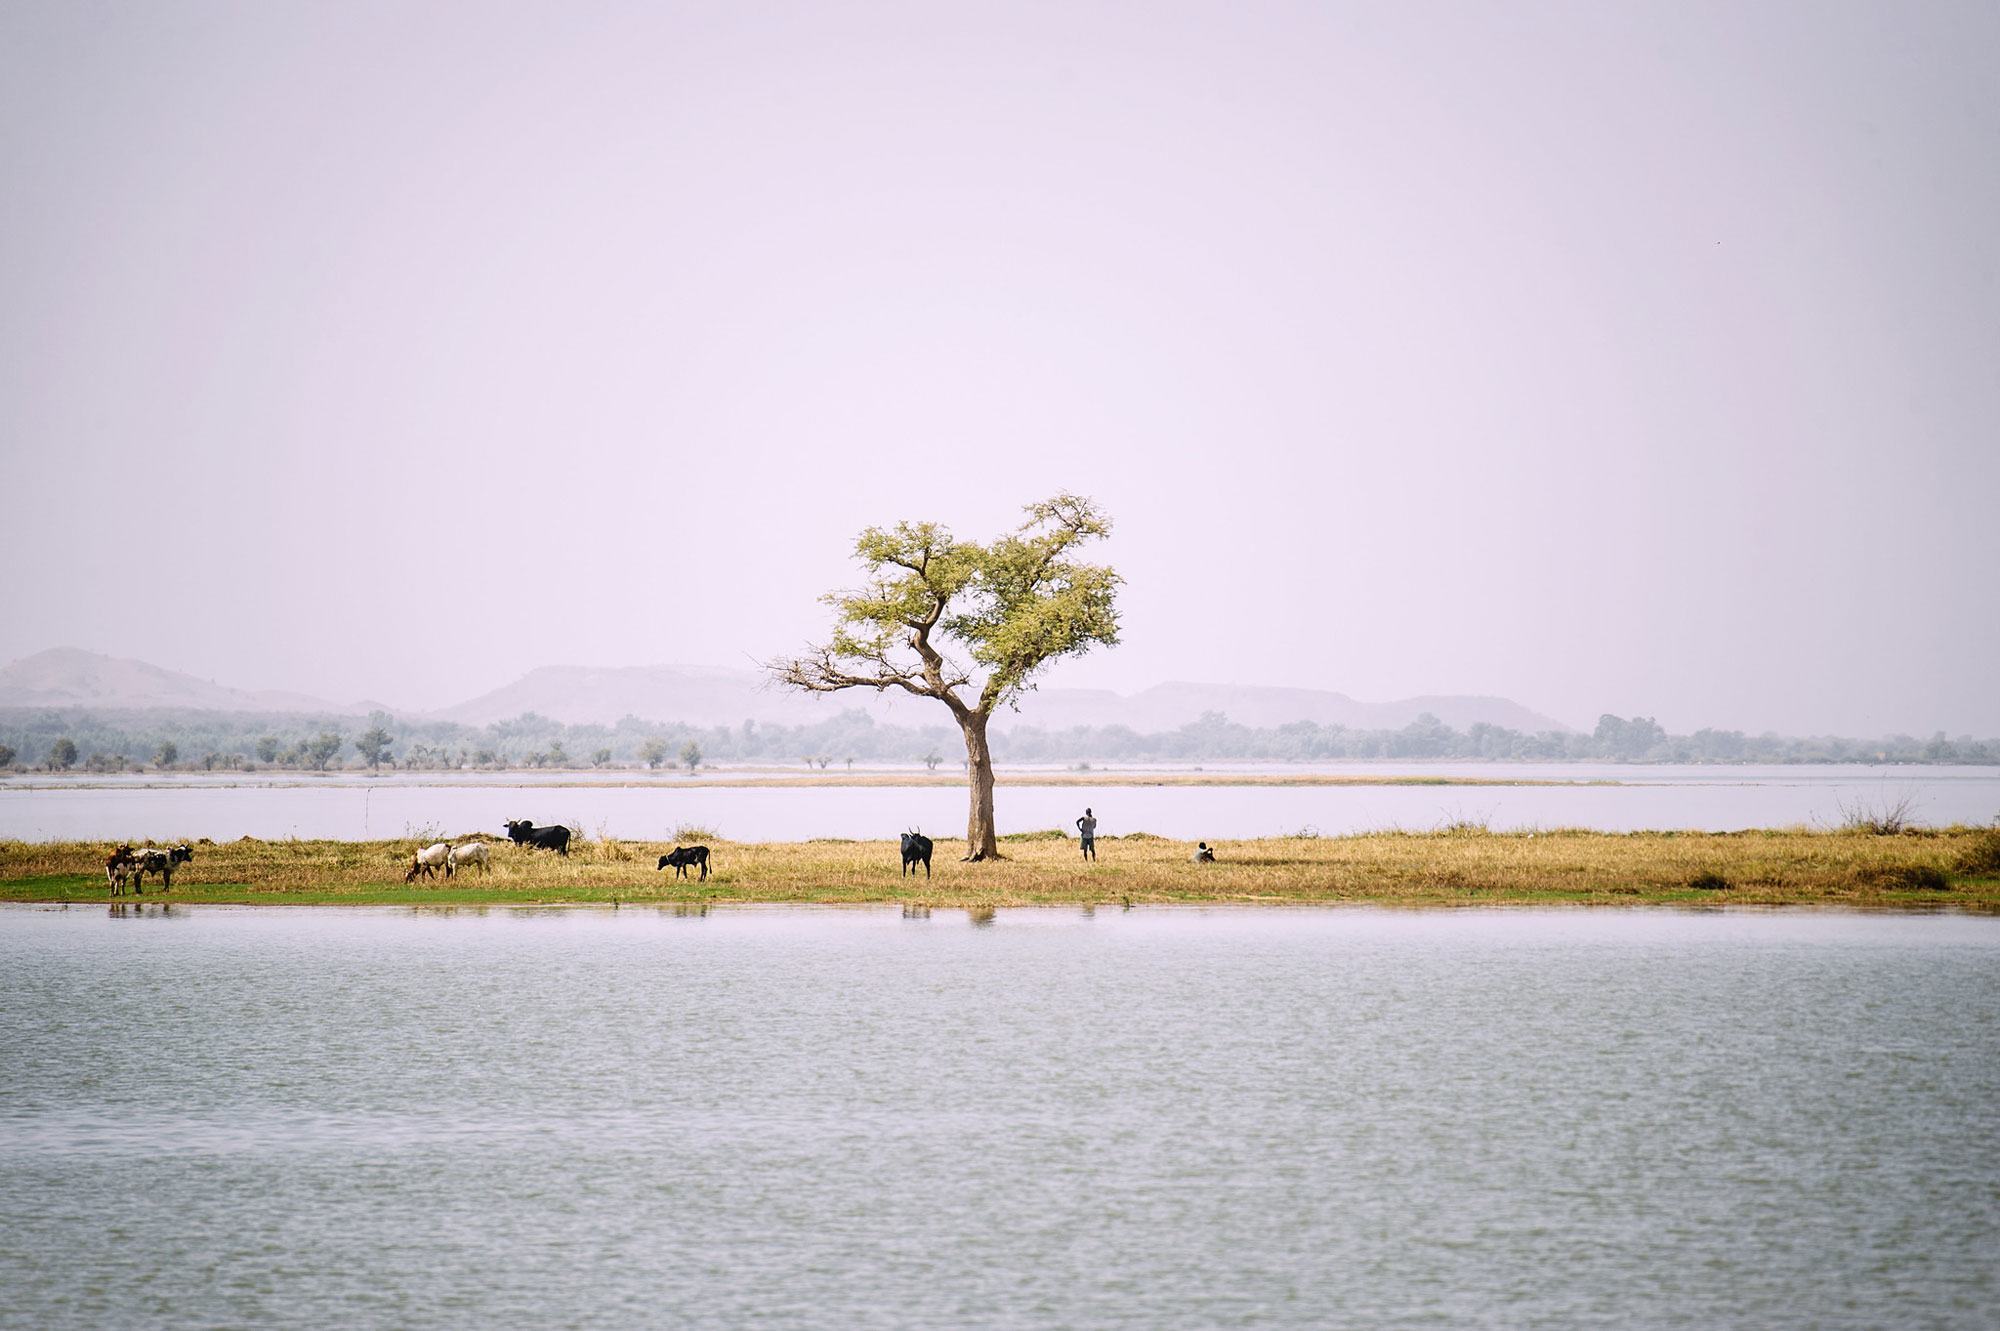 تواجه بحيرة بام، الواقعة في منطقة الوسط الشمالي في بوركينا فاسو، على بعد مائة كيلومتر من واغادوغو، تحديات بيئية هائلة.